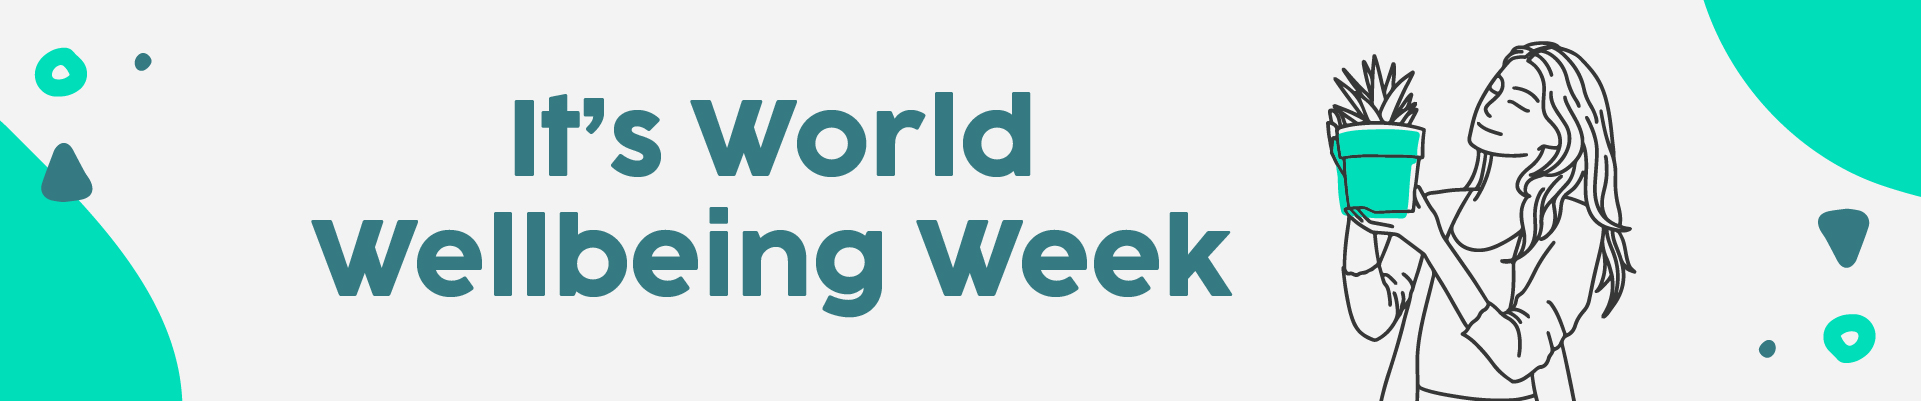 It's World Wellbeing Week